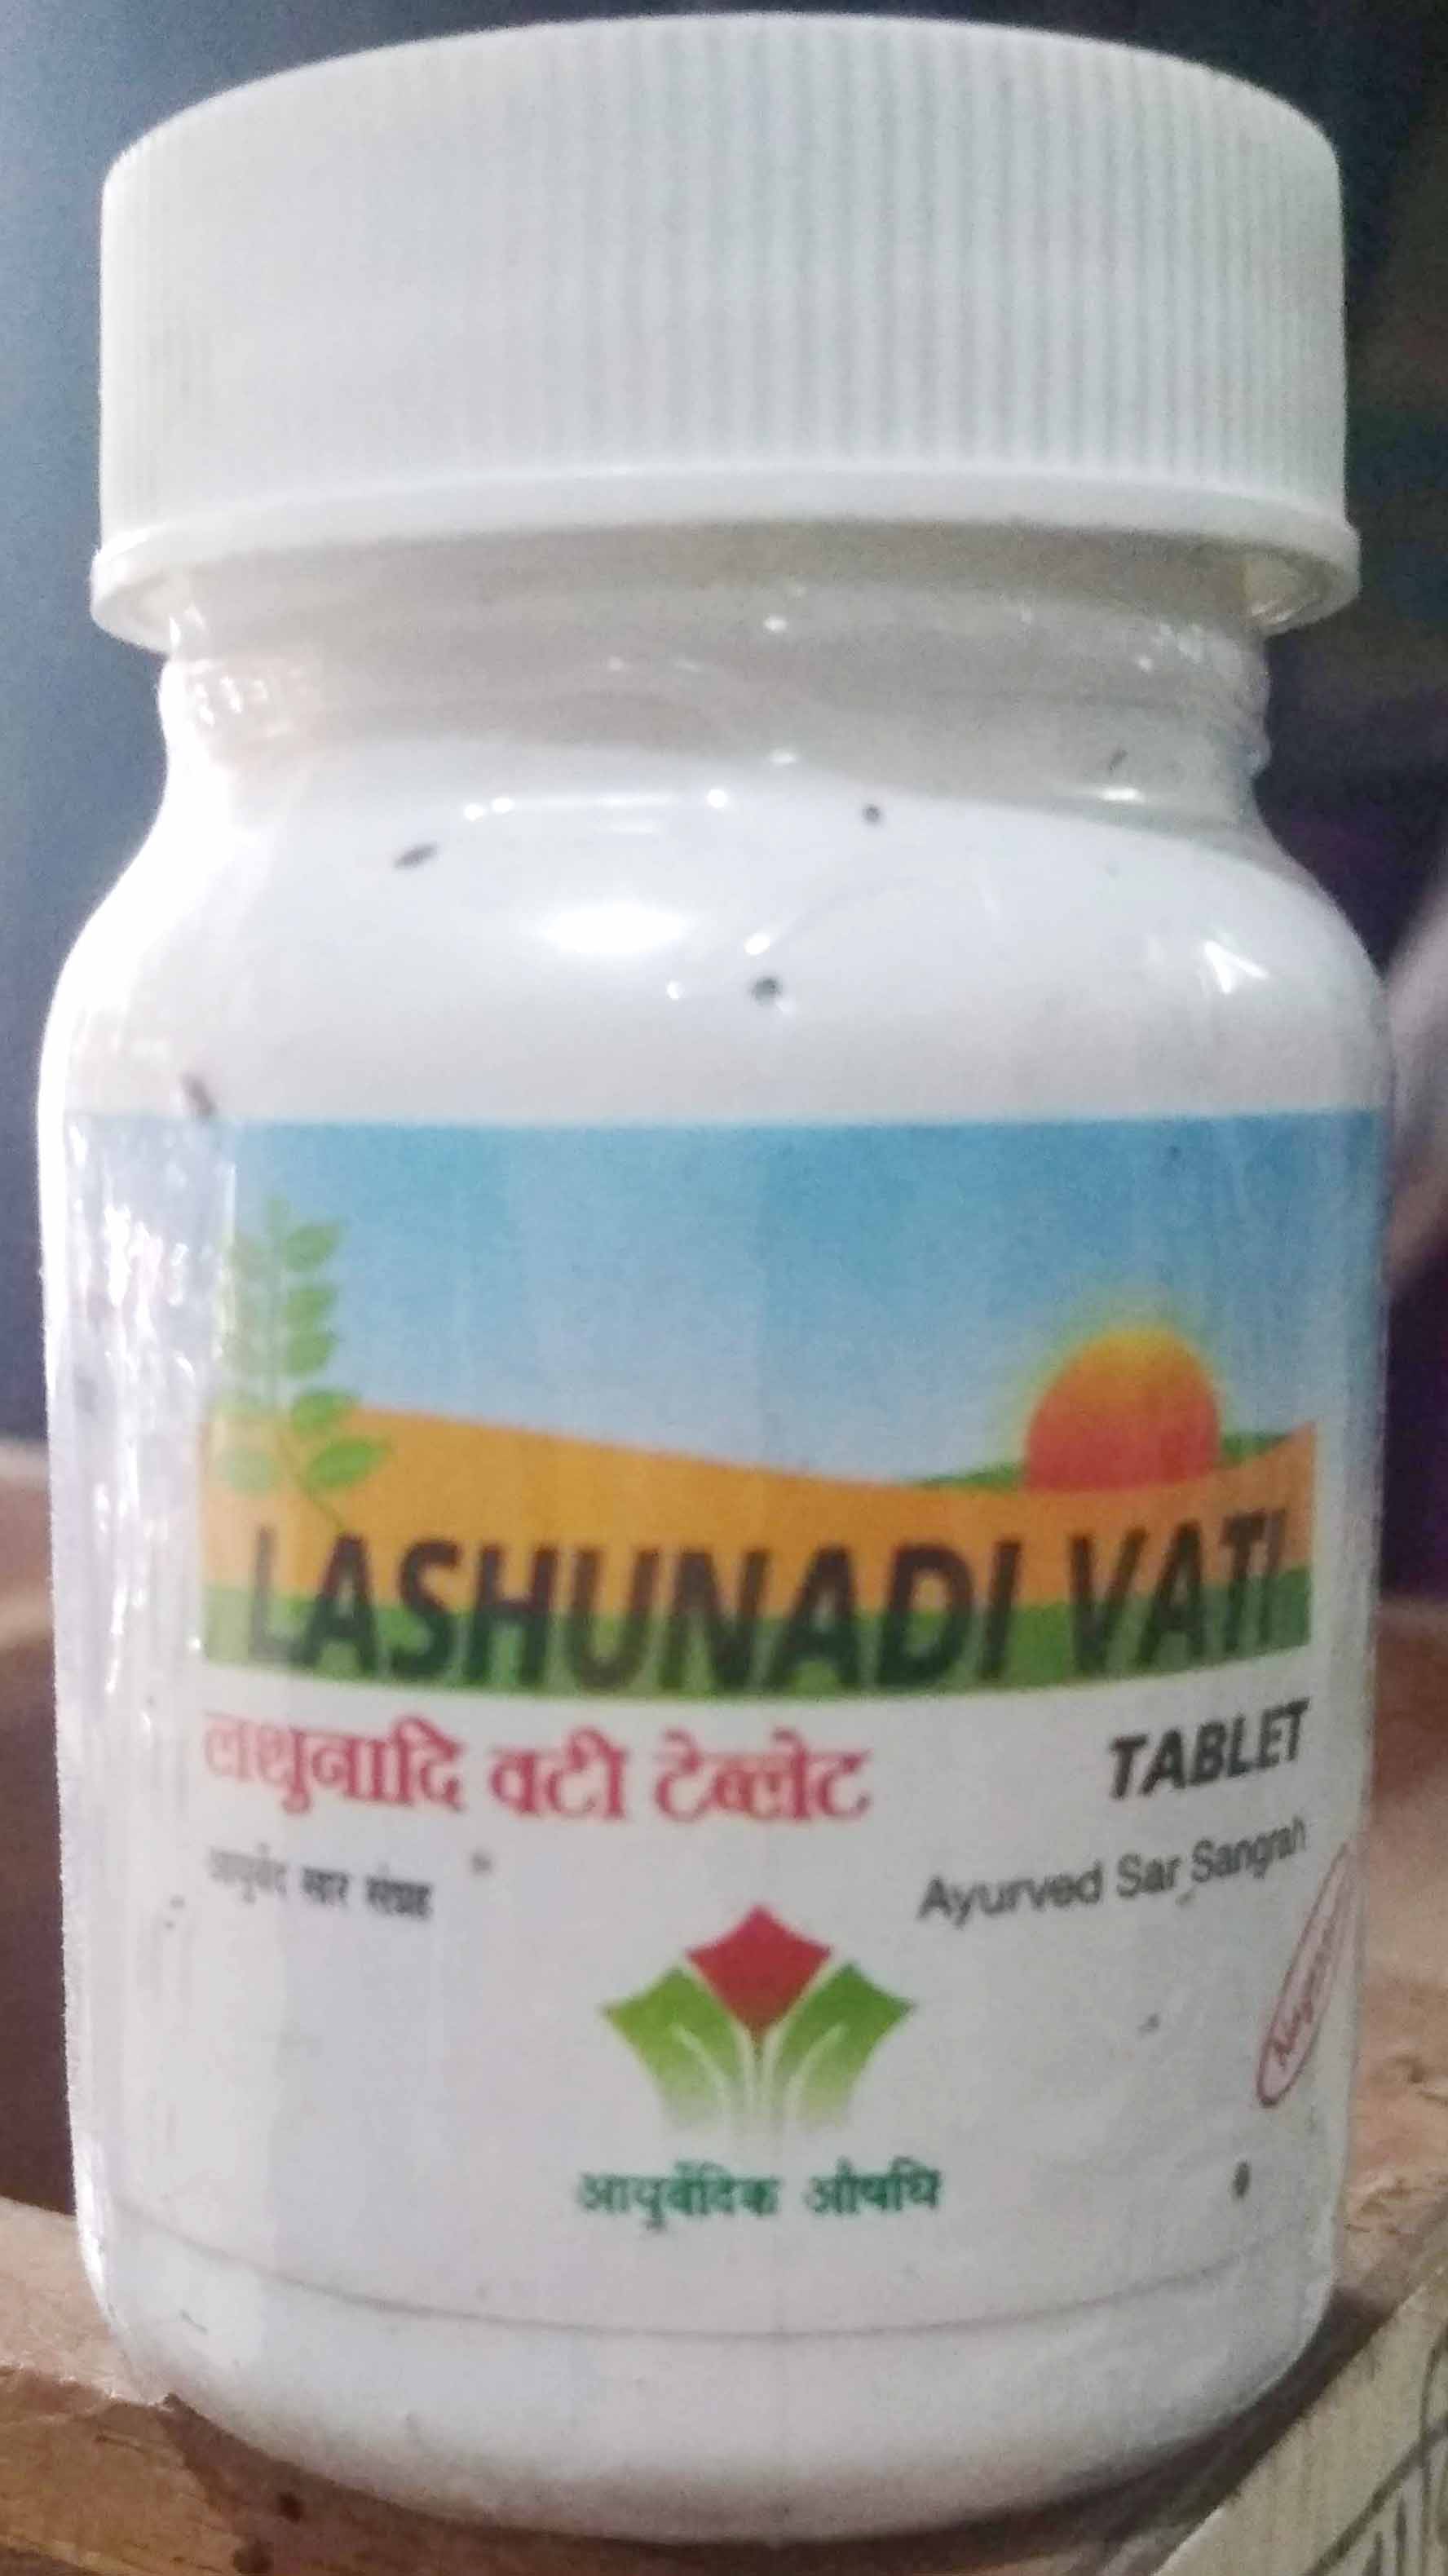 lashunadi vati 1200 tab upto 20% off free shipping nagarjun pharma gujarat